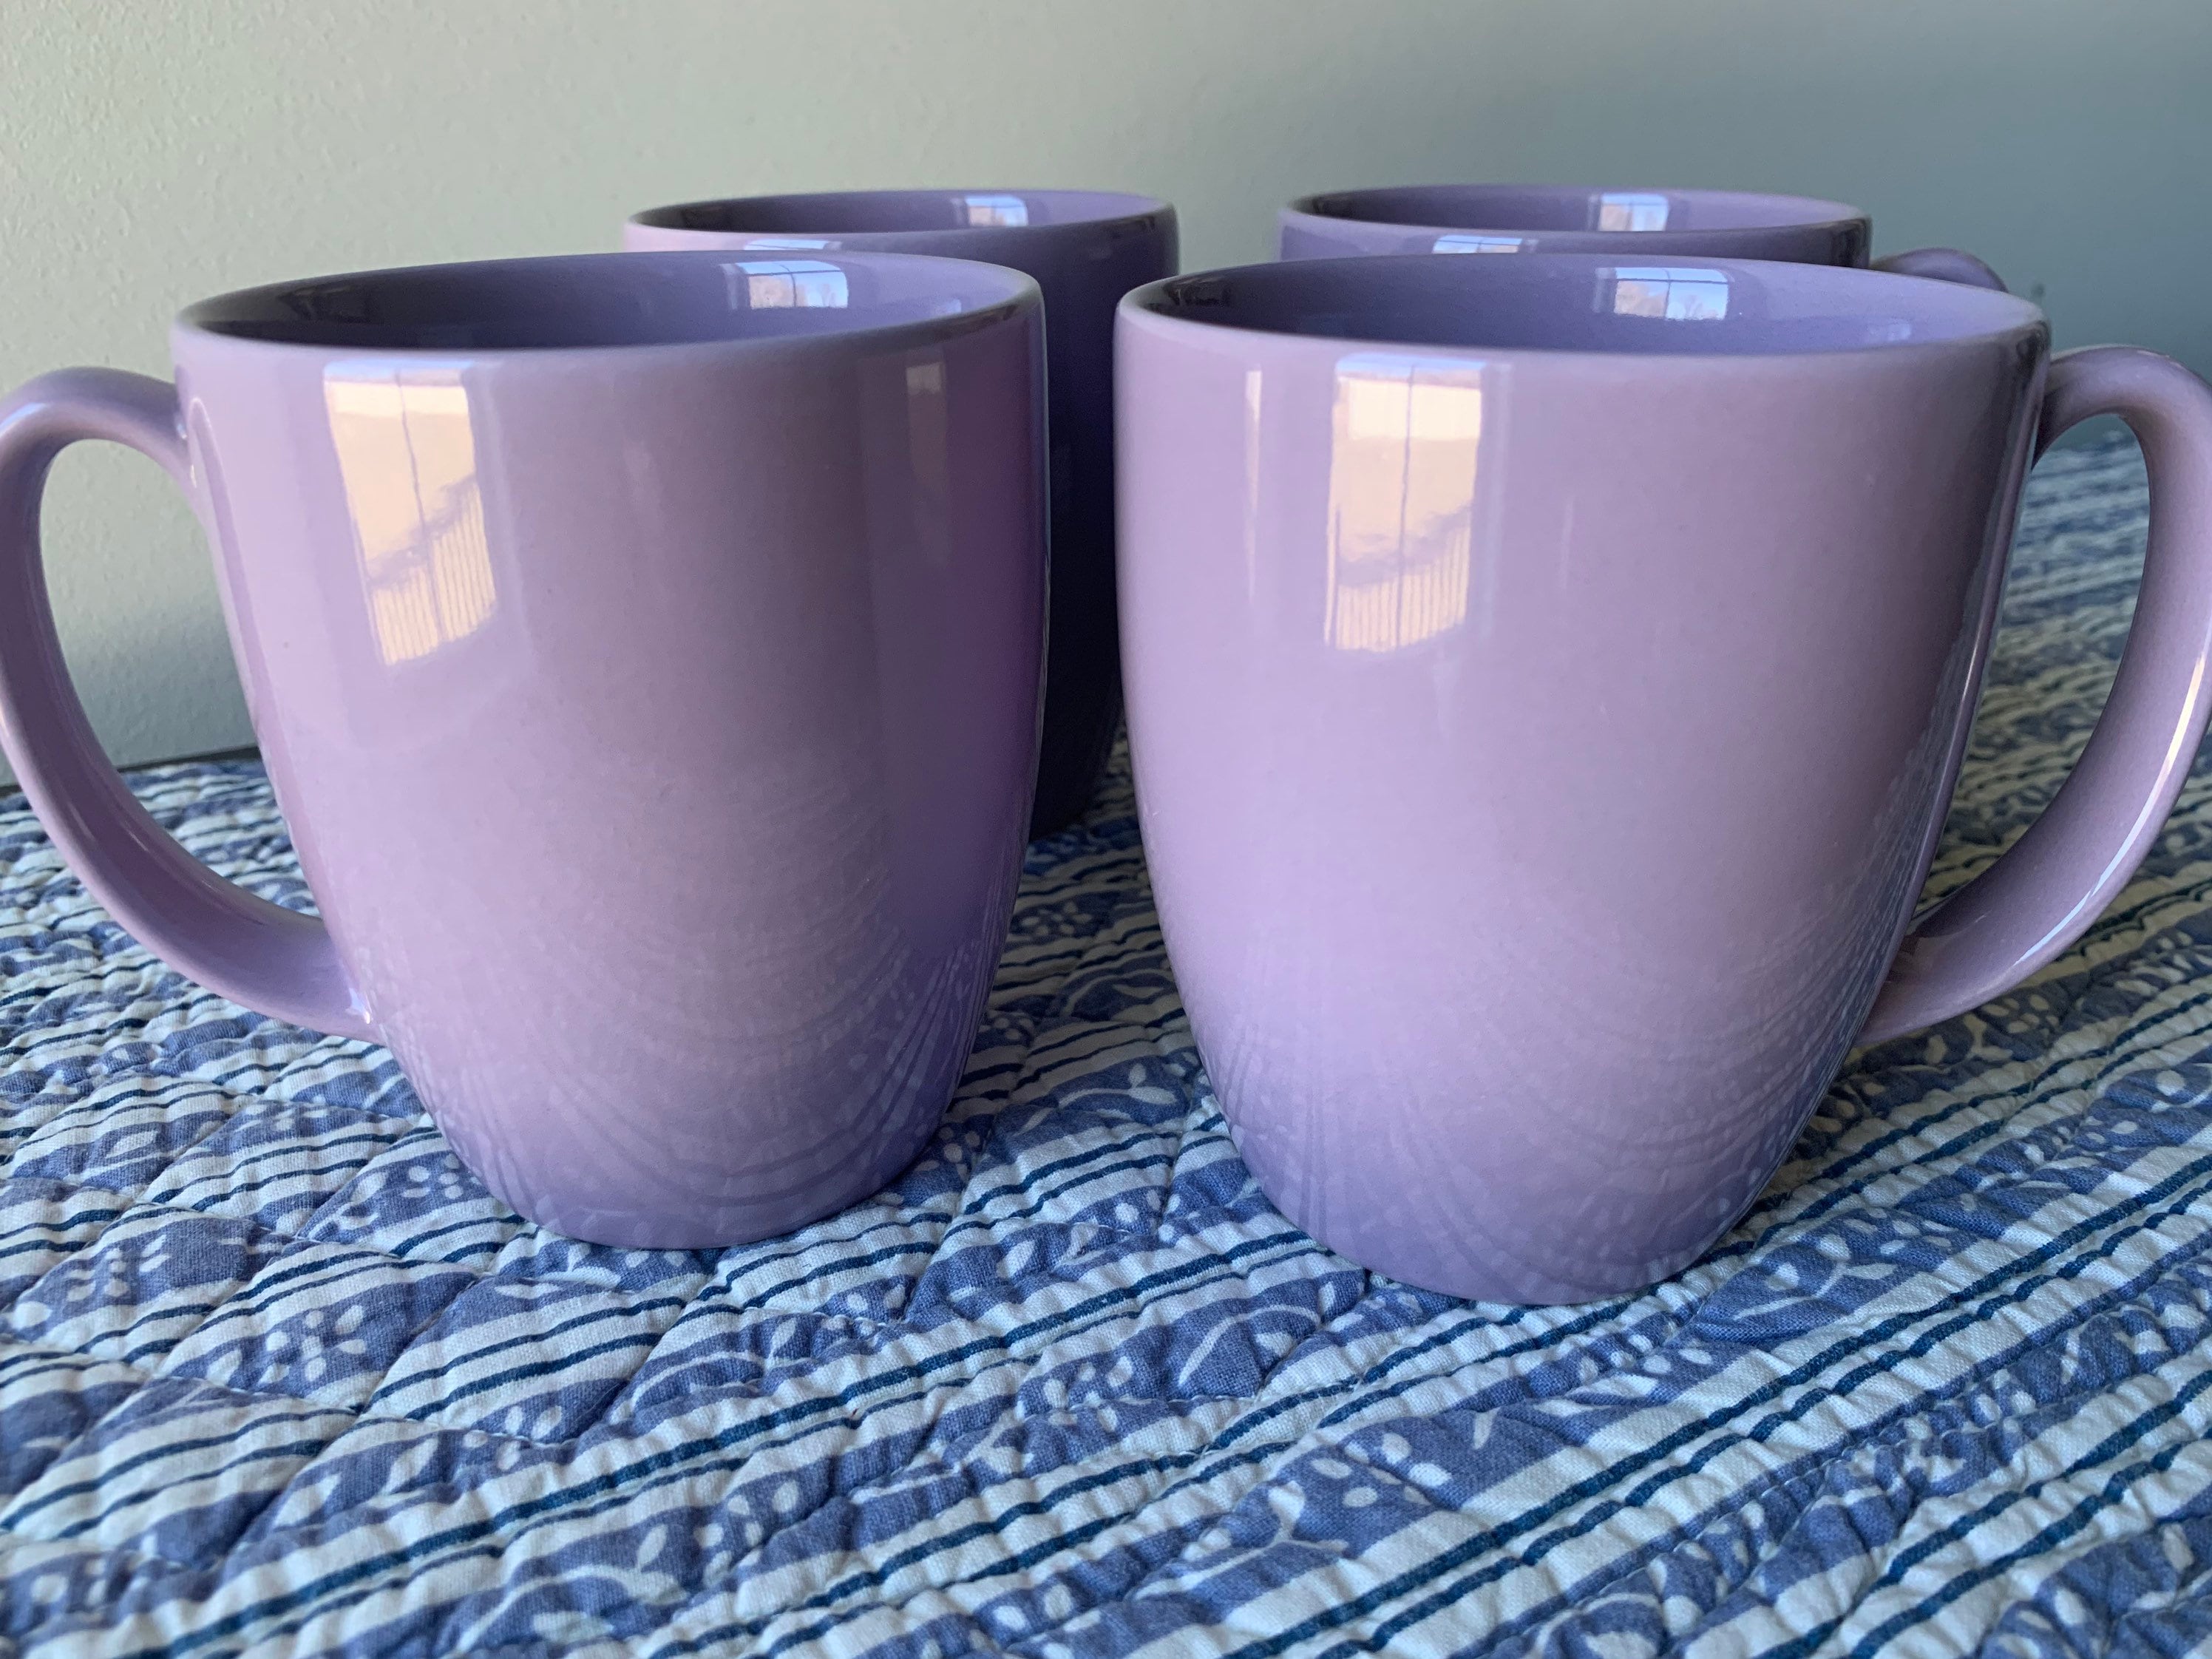 Corelle stoneware coffee mugs, lavender purple solid lilac color